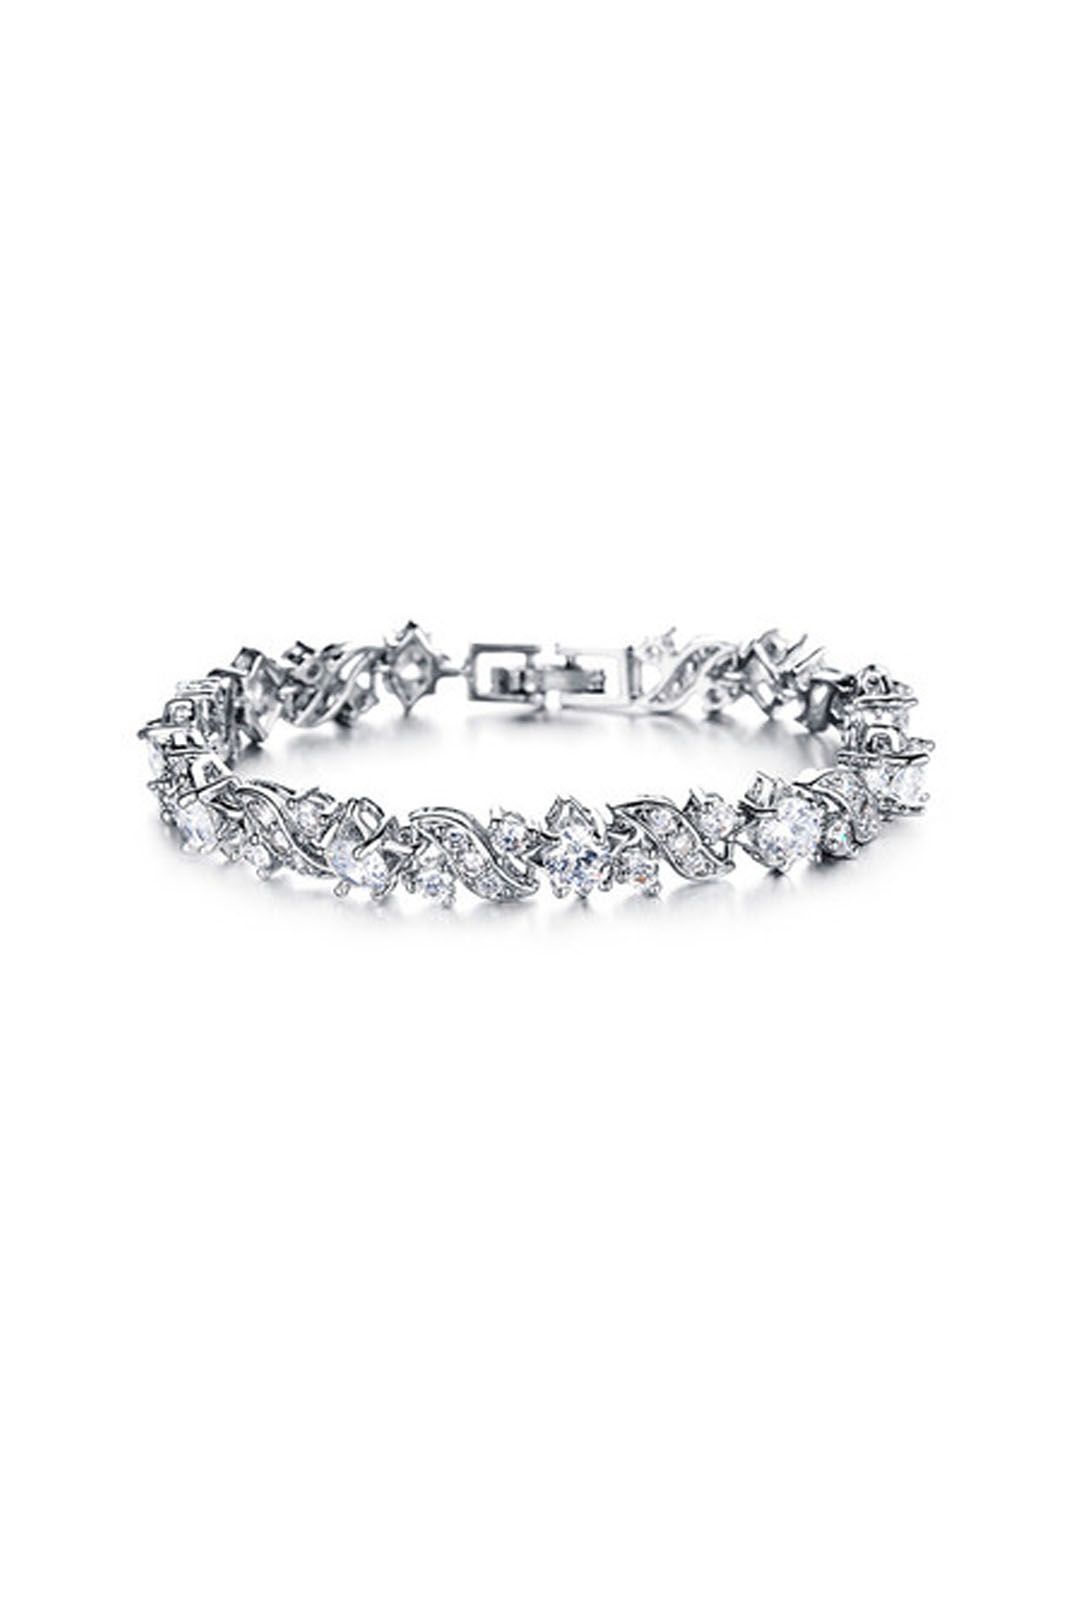 Krystal Couture - Zion Tennis Bracelet - Silver - Front